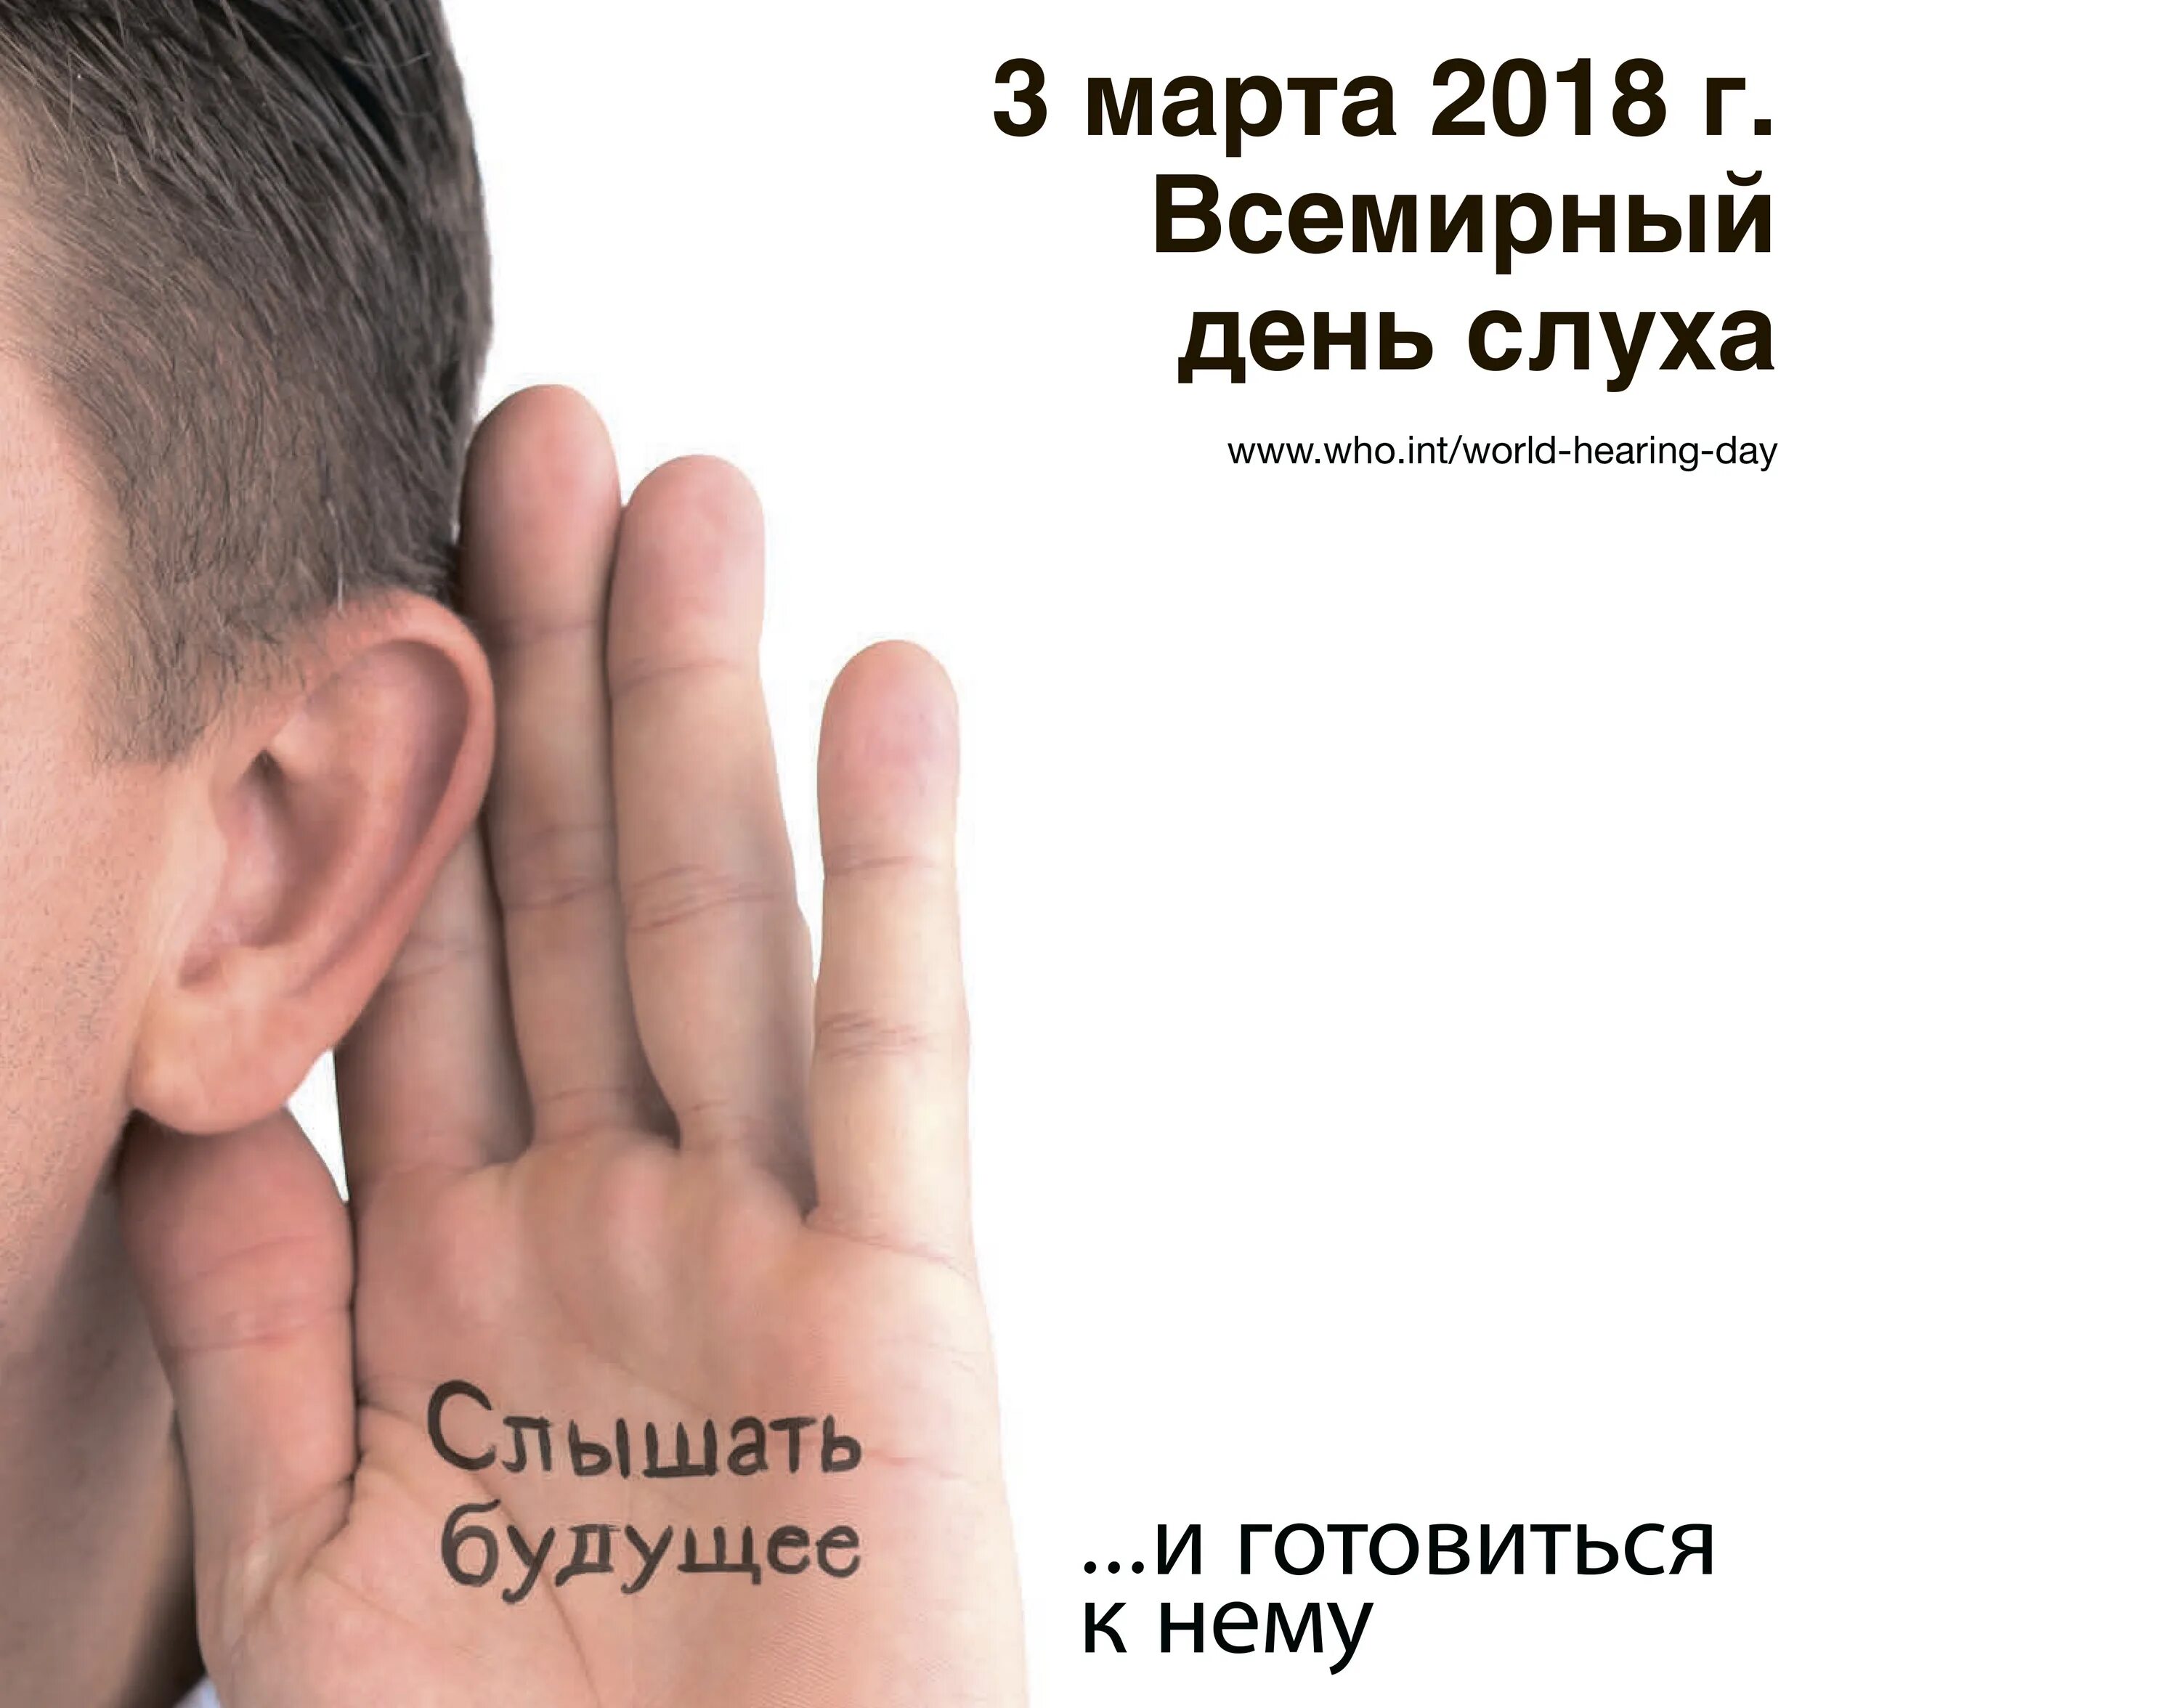 Международный день охраны здоровья уха и слуха. Всемирный день слуха. Всемирный день уха и слуха. Международный день охраны уха и слуха.